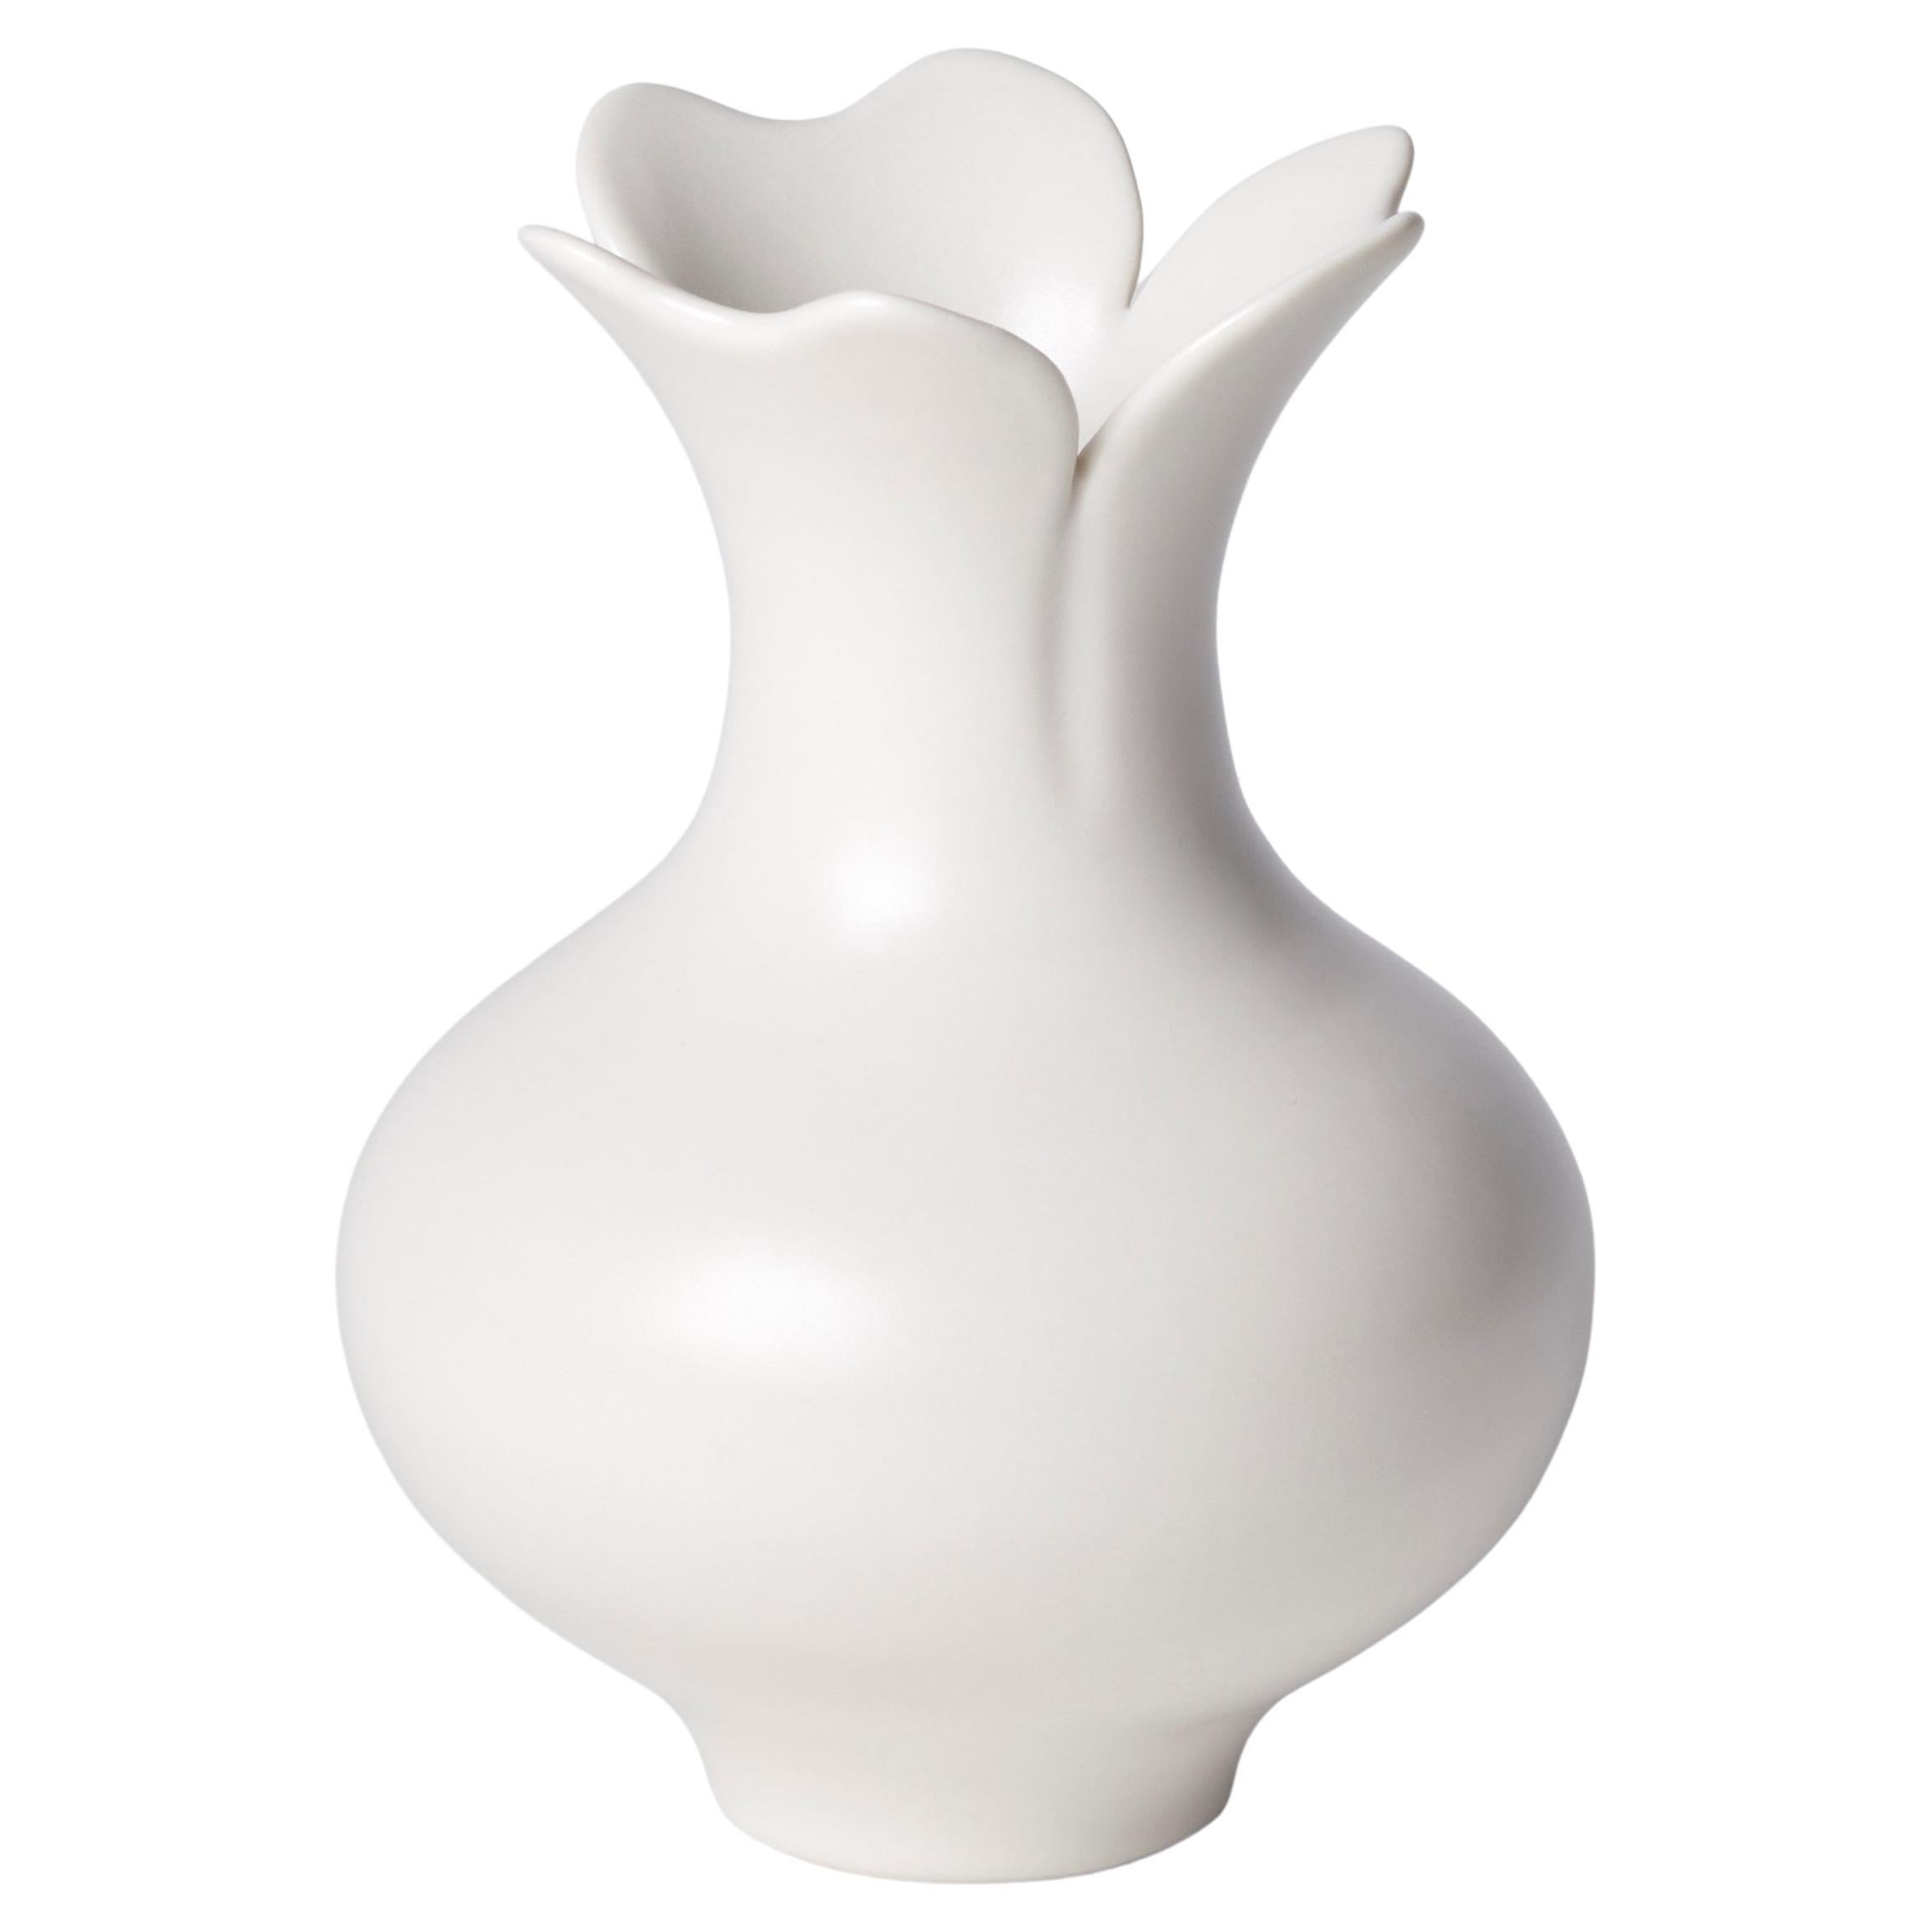 Vase with Three Petal Rim, a Unique White Porcelain Vase by Vivienne Foley